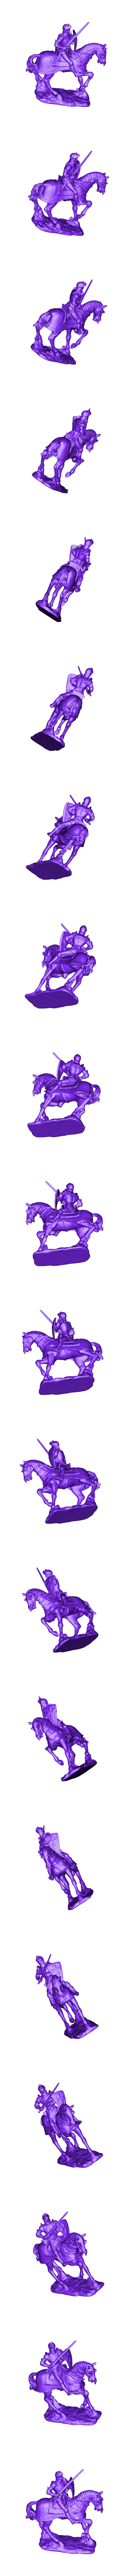 stl_bcc9ba86d3d6d2316d02185858802ded_2208.stl Télécharger le fichier STL gratuit Figurine chevalier à cheval • Objet imprimable en 3D, MarcoDaCunia55